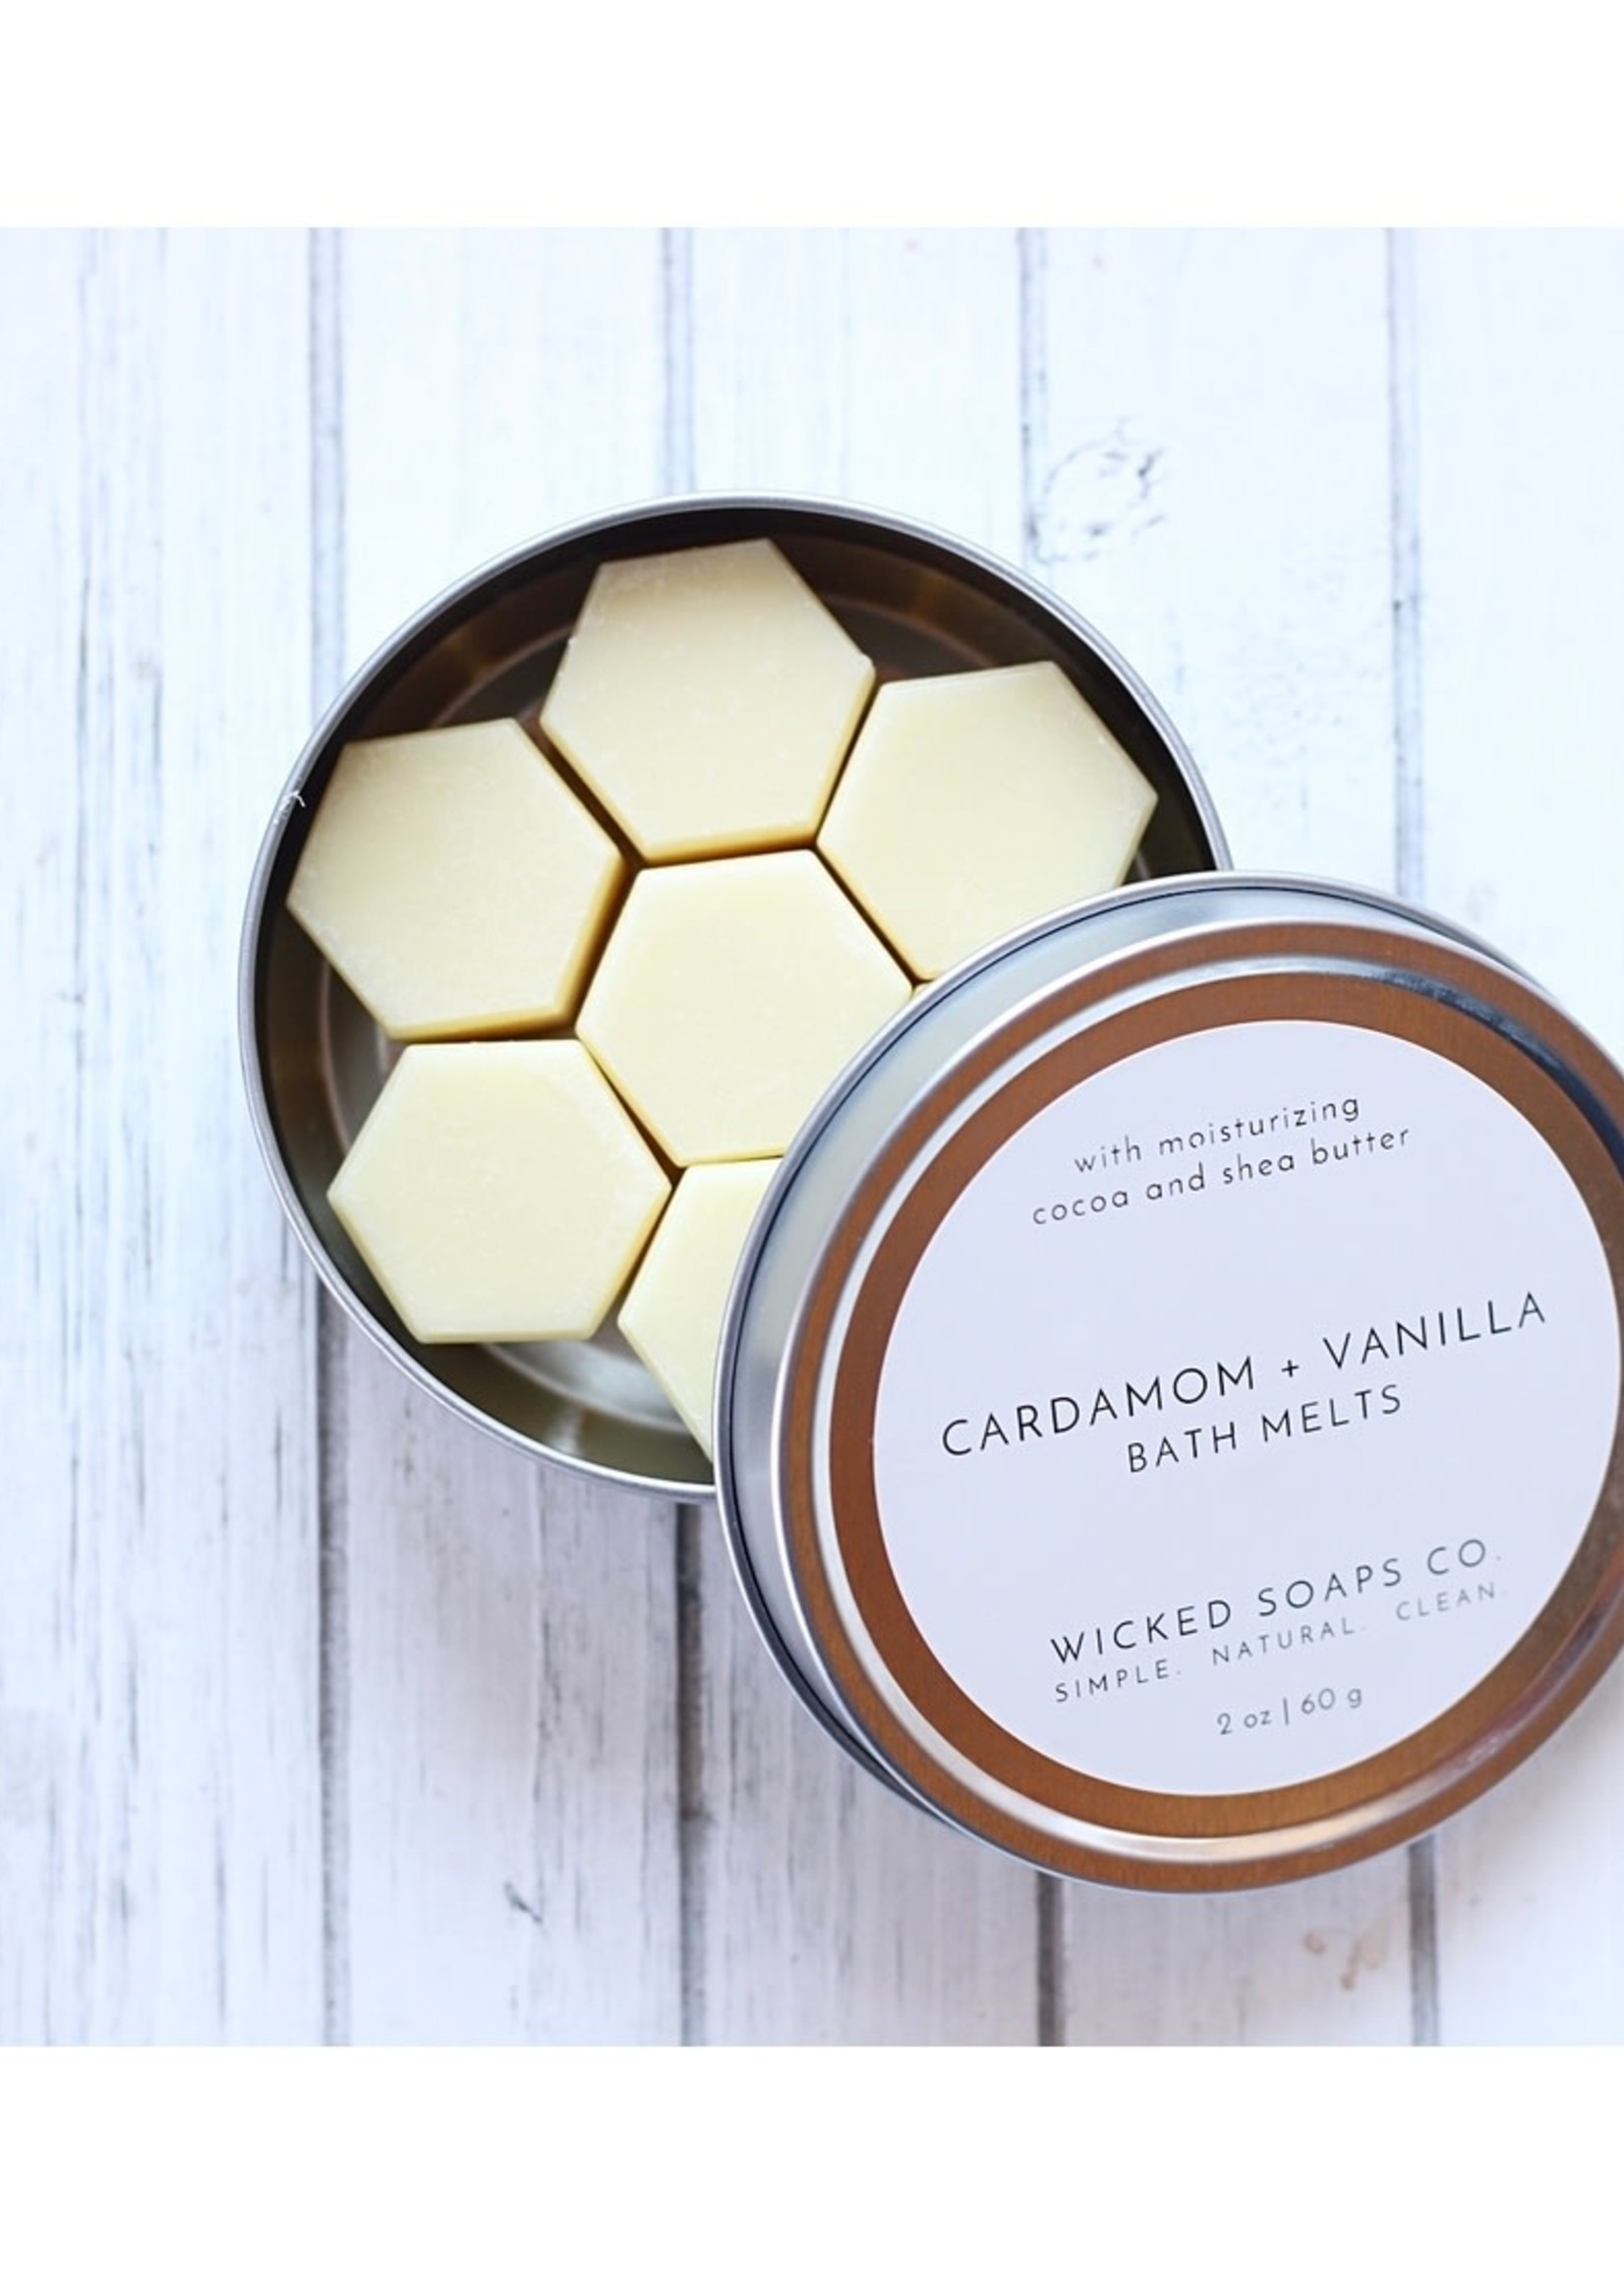 Wicked Soaps Co. Cardamom + Vanilla Bath Melts